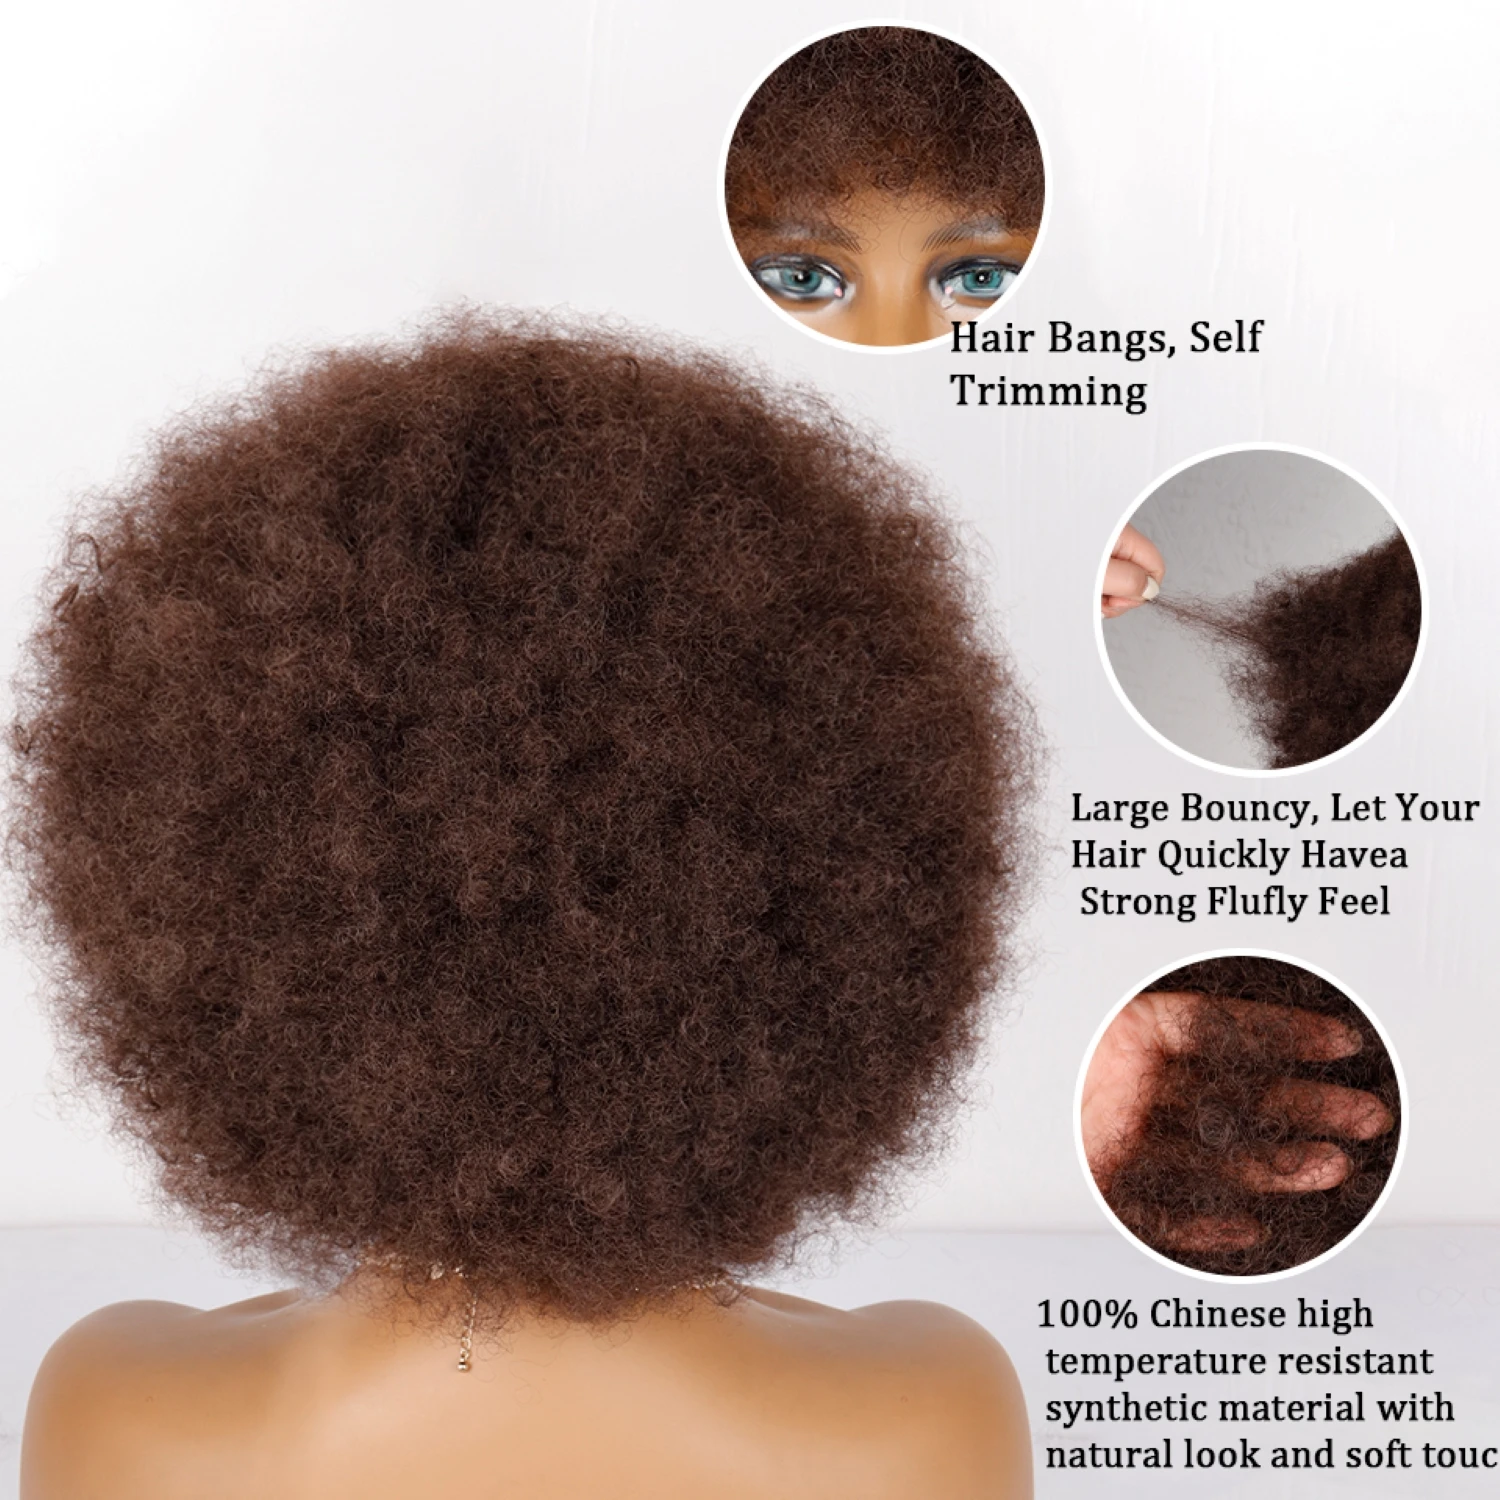 קצר Glueless טמפרטורה גבוהה שיער אפרו קינקי מתולתל פאה עם פוני לנשים שחורות בלונדינית טבעי סינטטי Cosplay פאות - 2